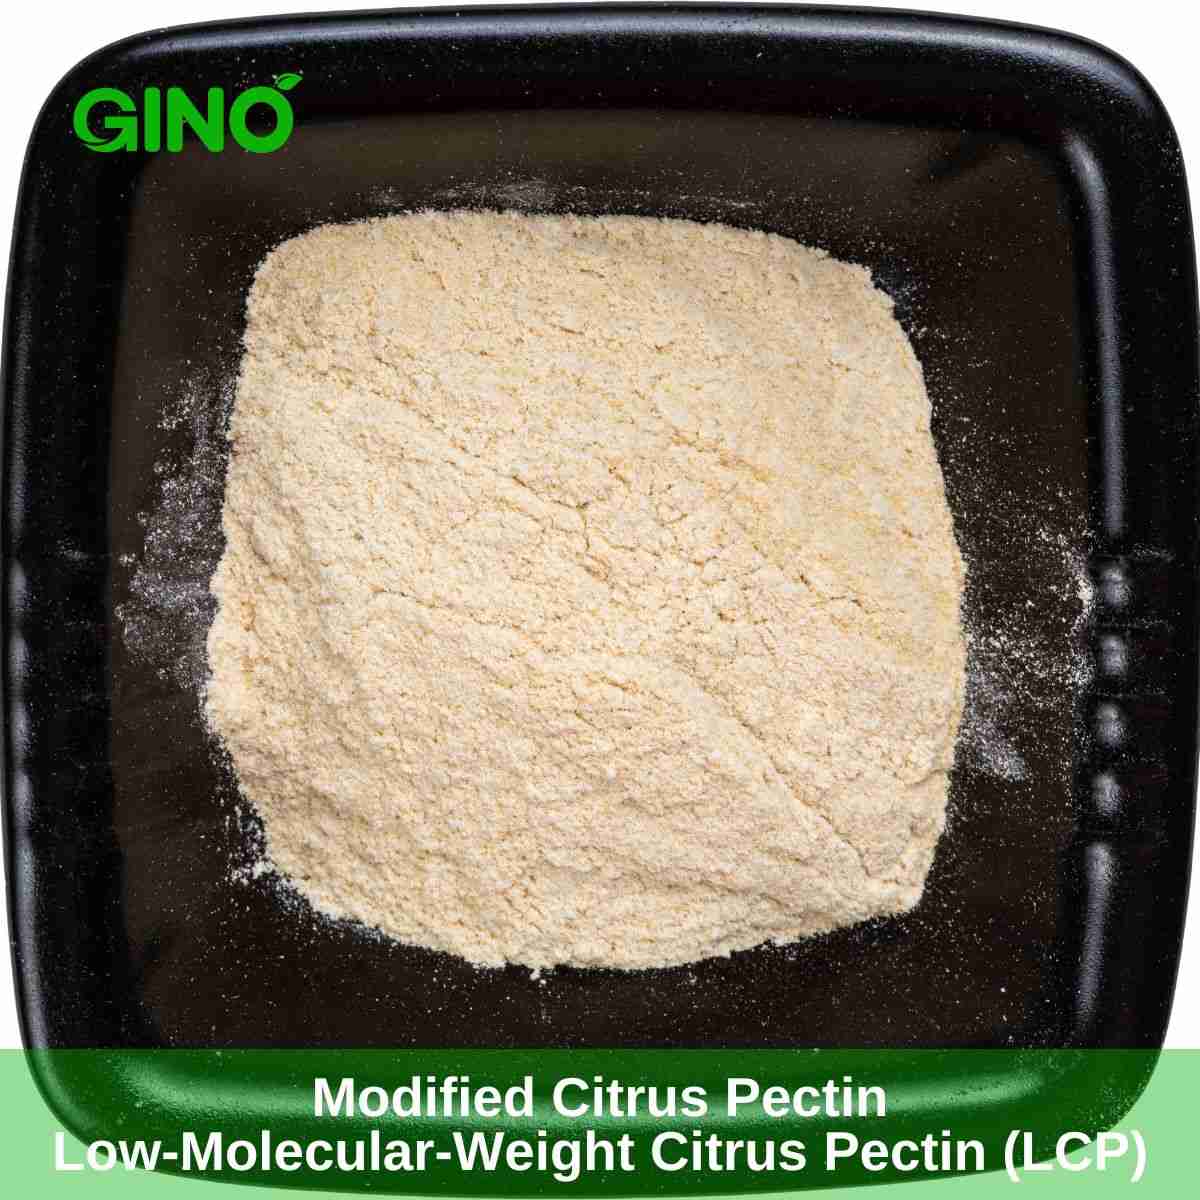 Modified Citrus Pectin & Low-Molecular-Weight Citrus Pectin (LCP)